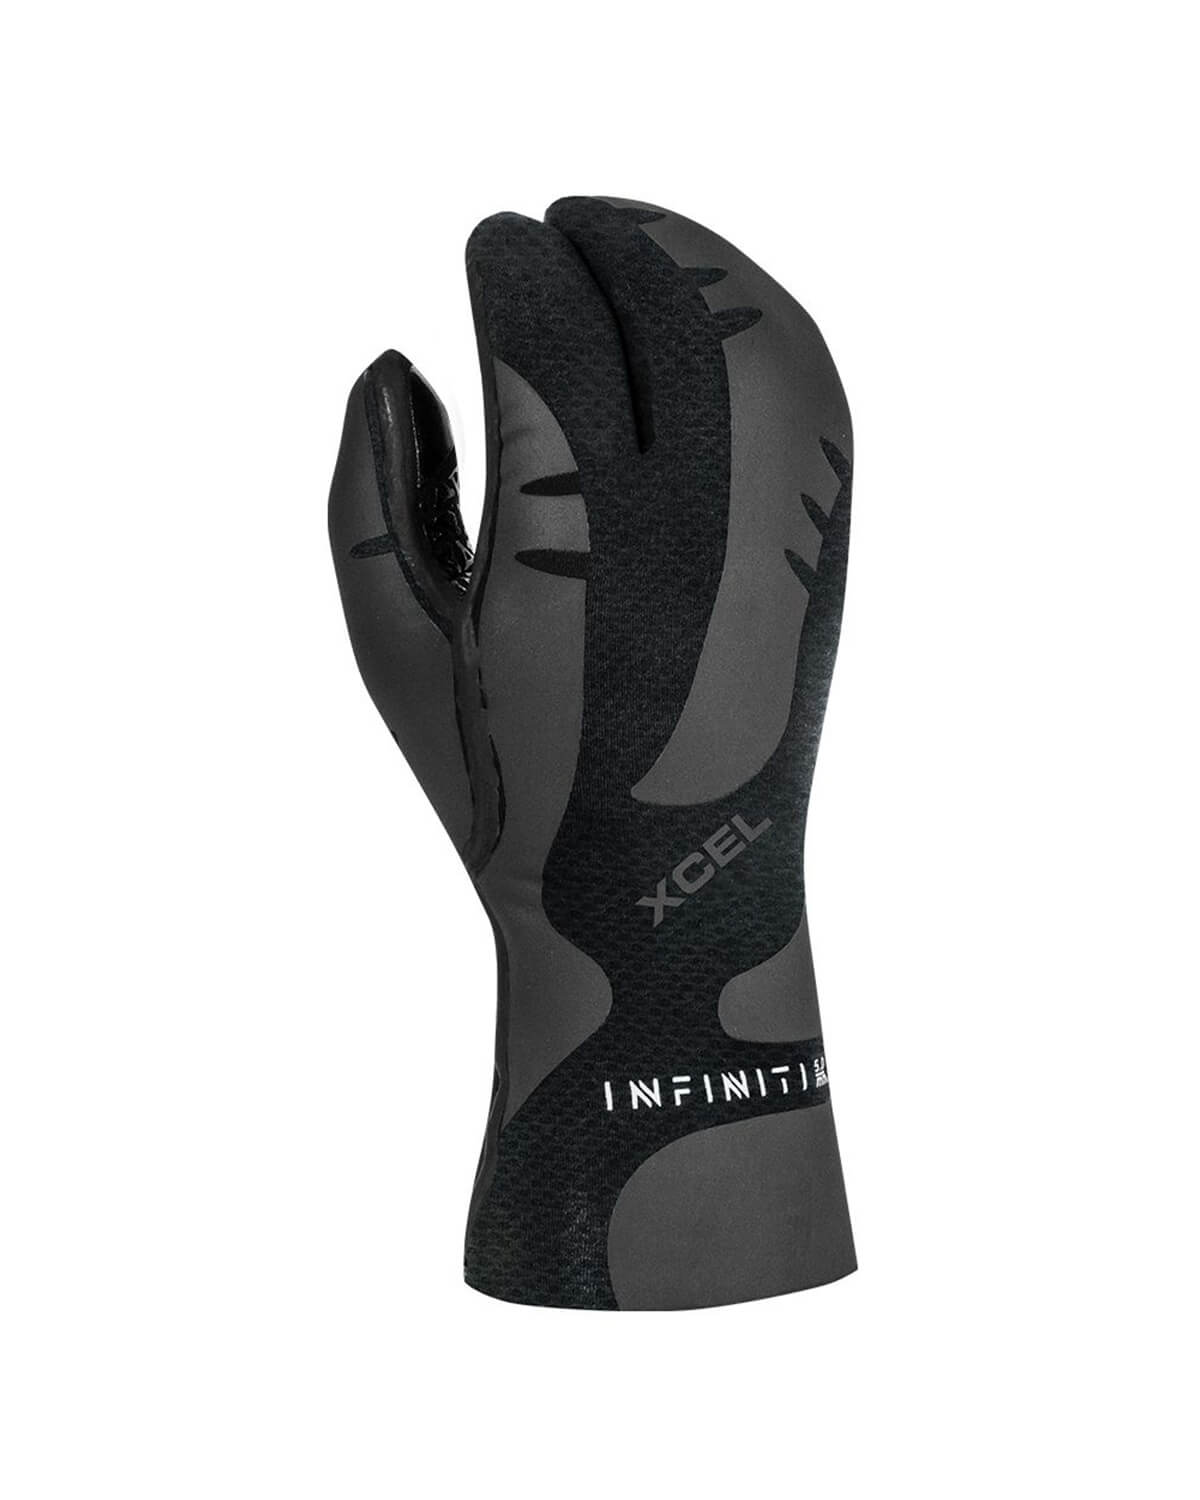 5mm XCEL INFINITI 3-Finger Gloves